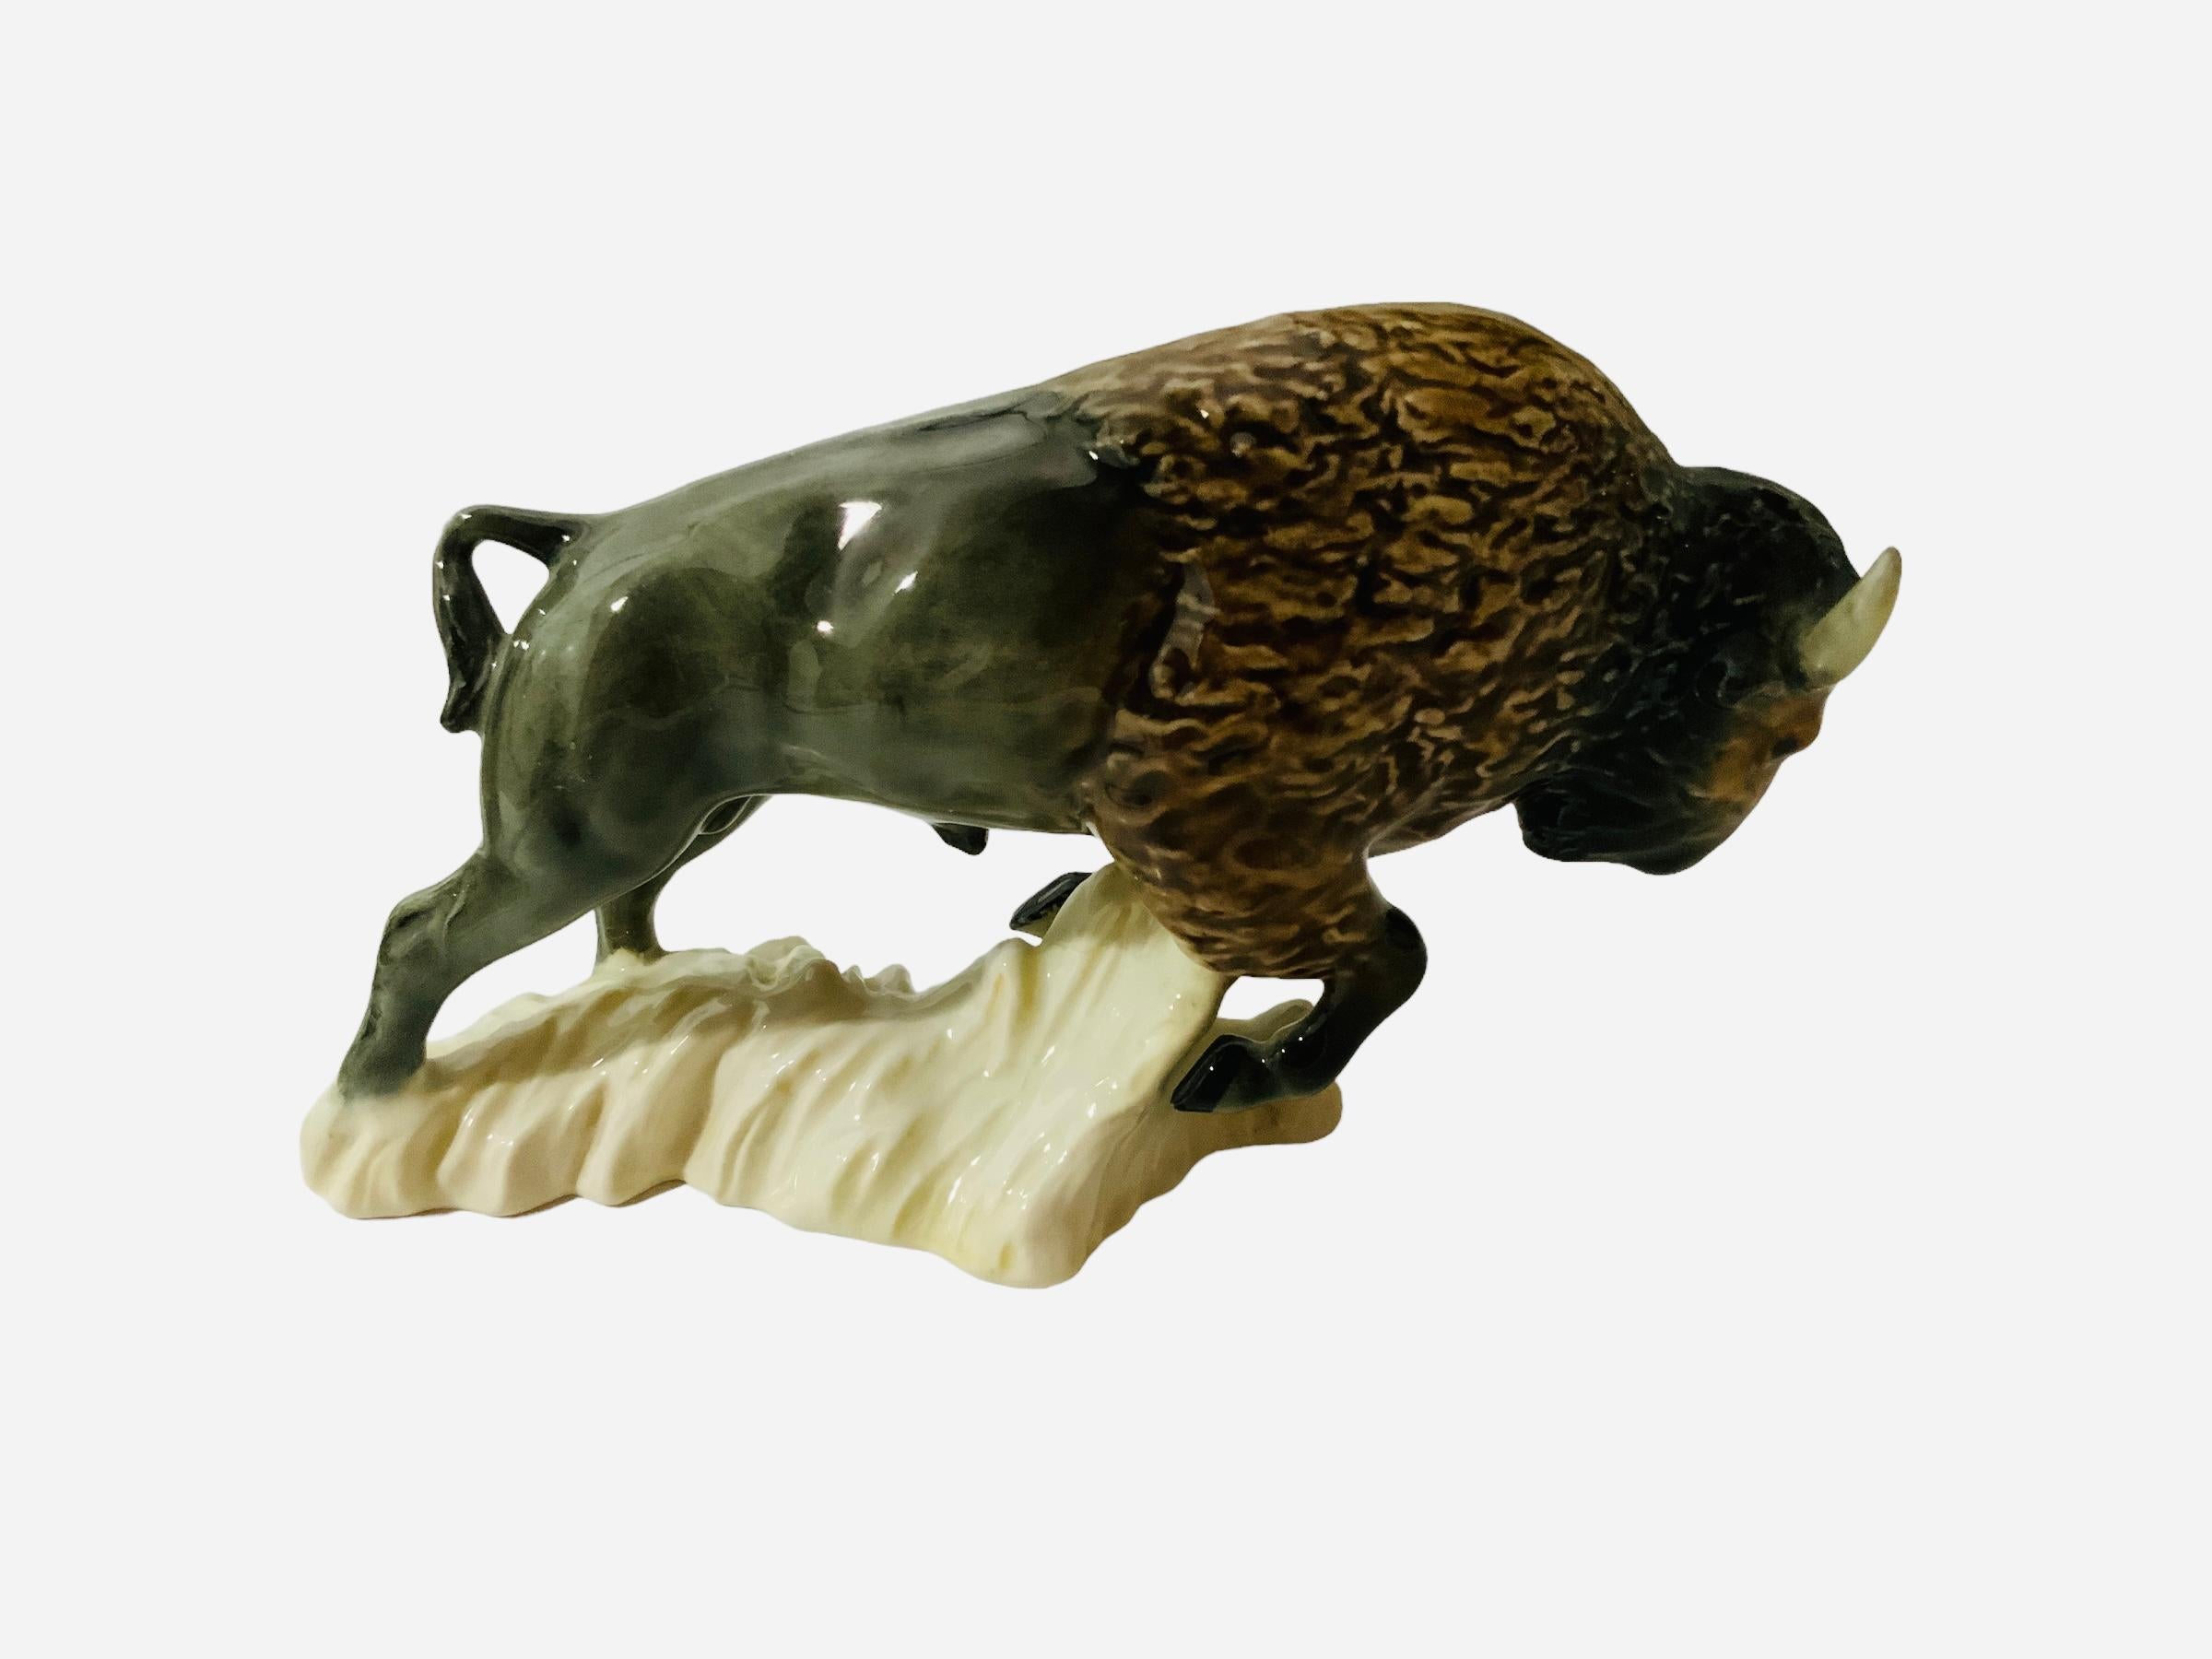 Dies ist eine Goeble Porzellanfigur eines Büffels. Es zeigt einen sehr gut gemachten, handgemalten, tapferen und starken Büffel. Er pflügt vorwärts, während er mit seinen Beinen den Boden anhebt. Der amerikanische Büffel symbolisiert Überfluss und